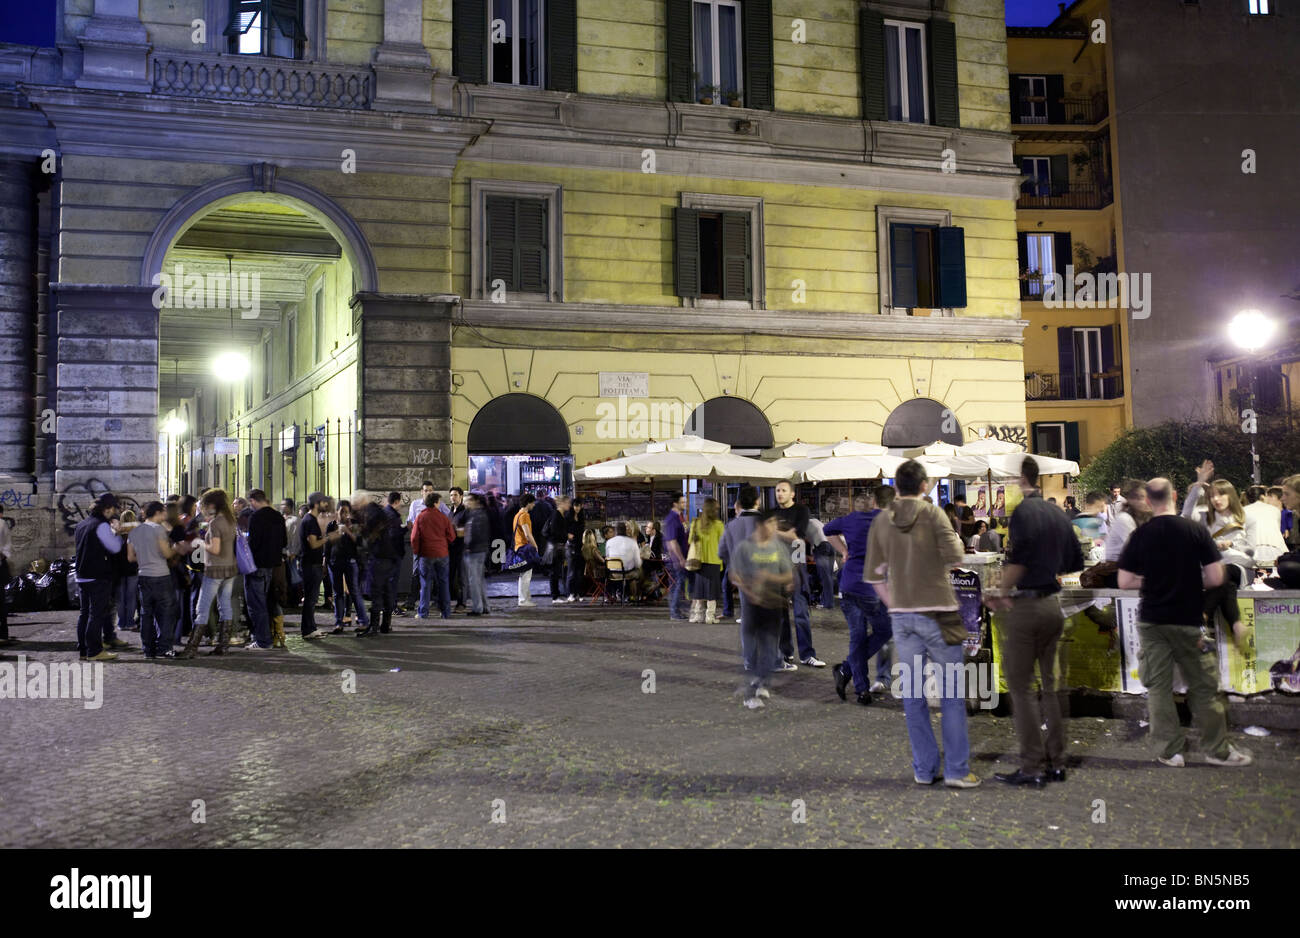 Nightlife in Trastevere, Rome, Italy Stock Photo - Alamy